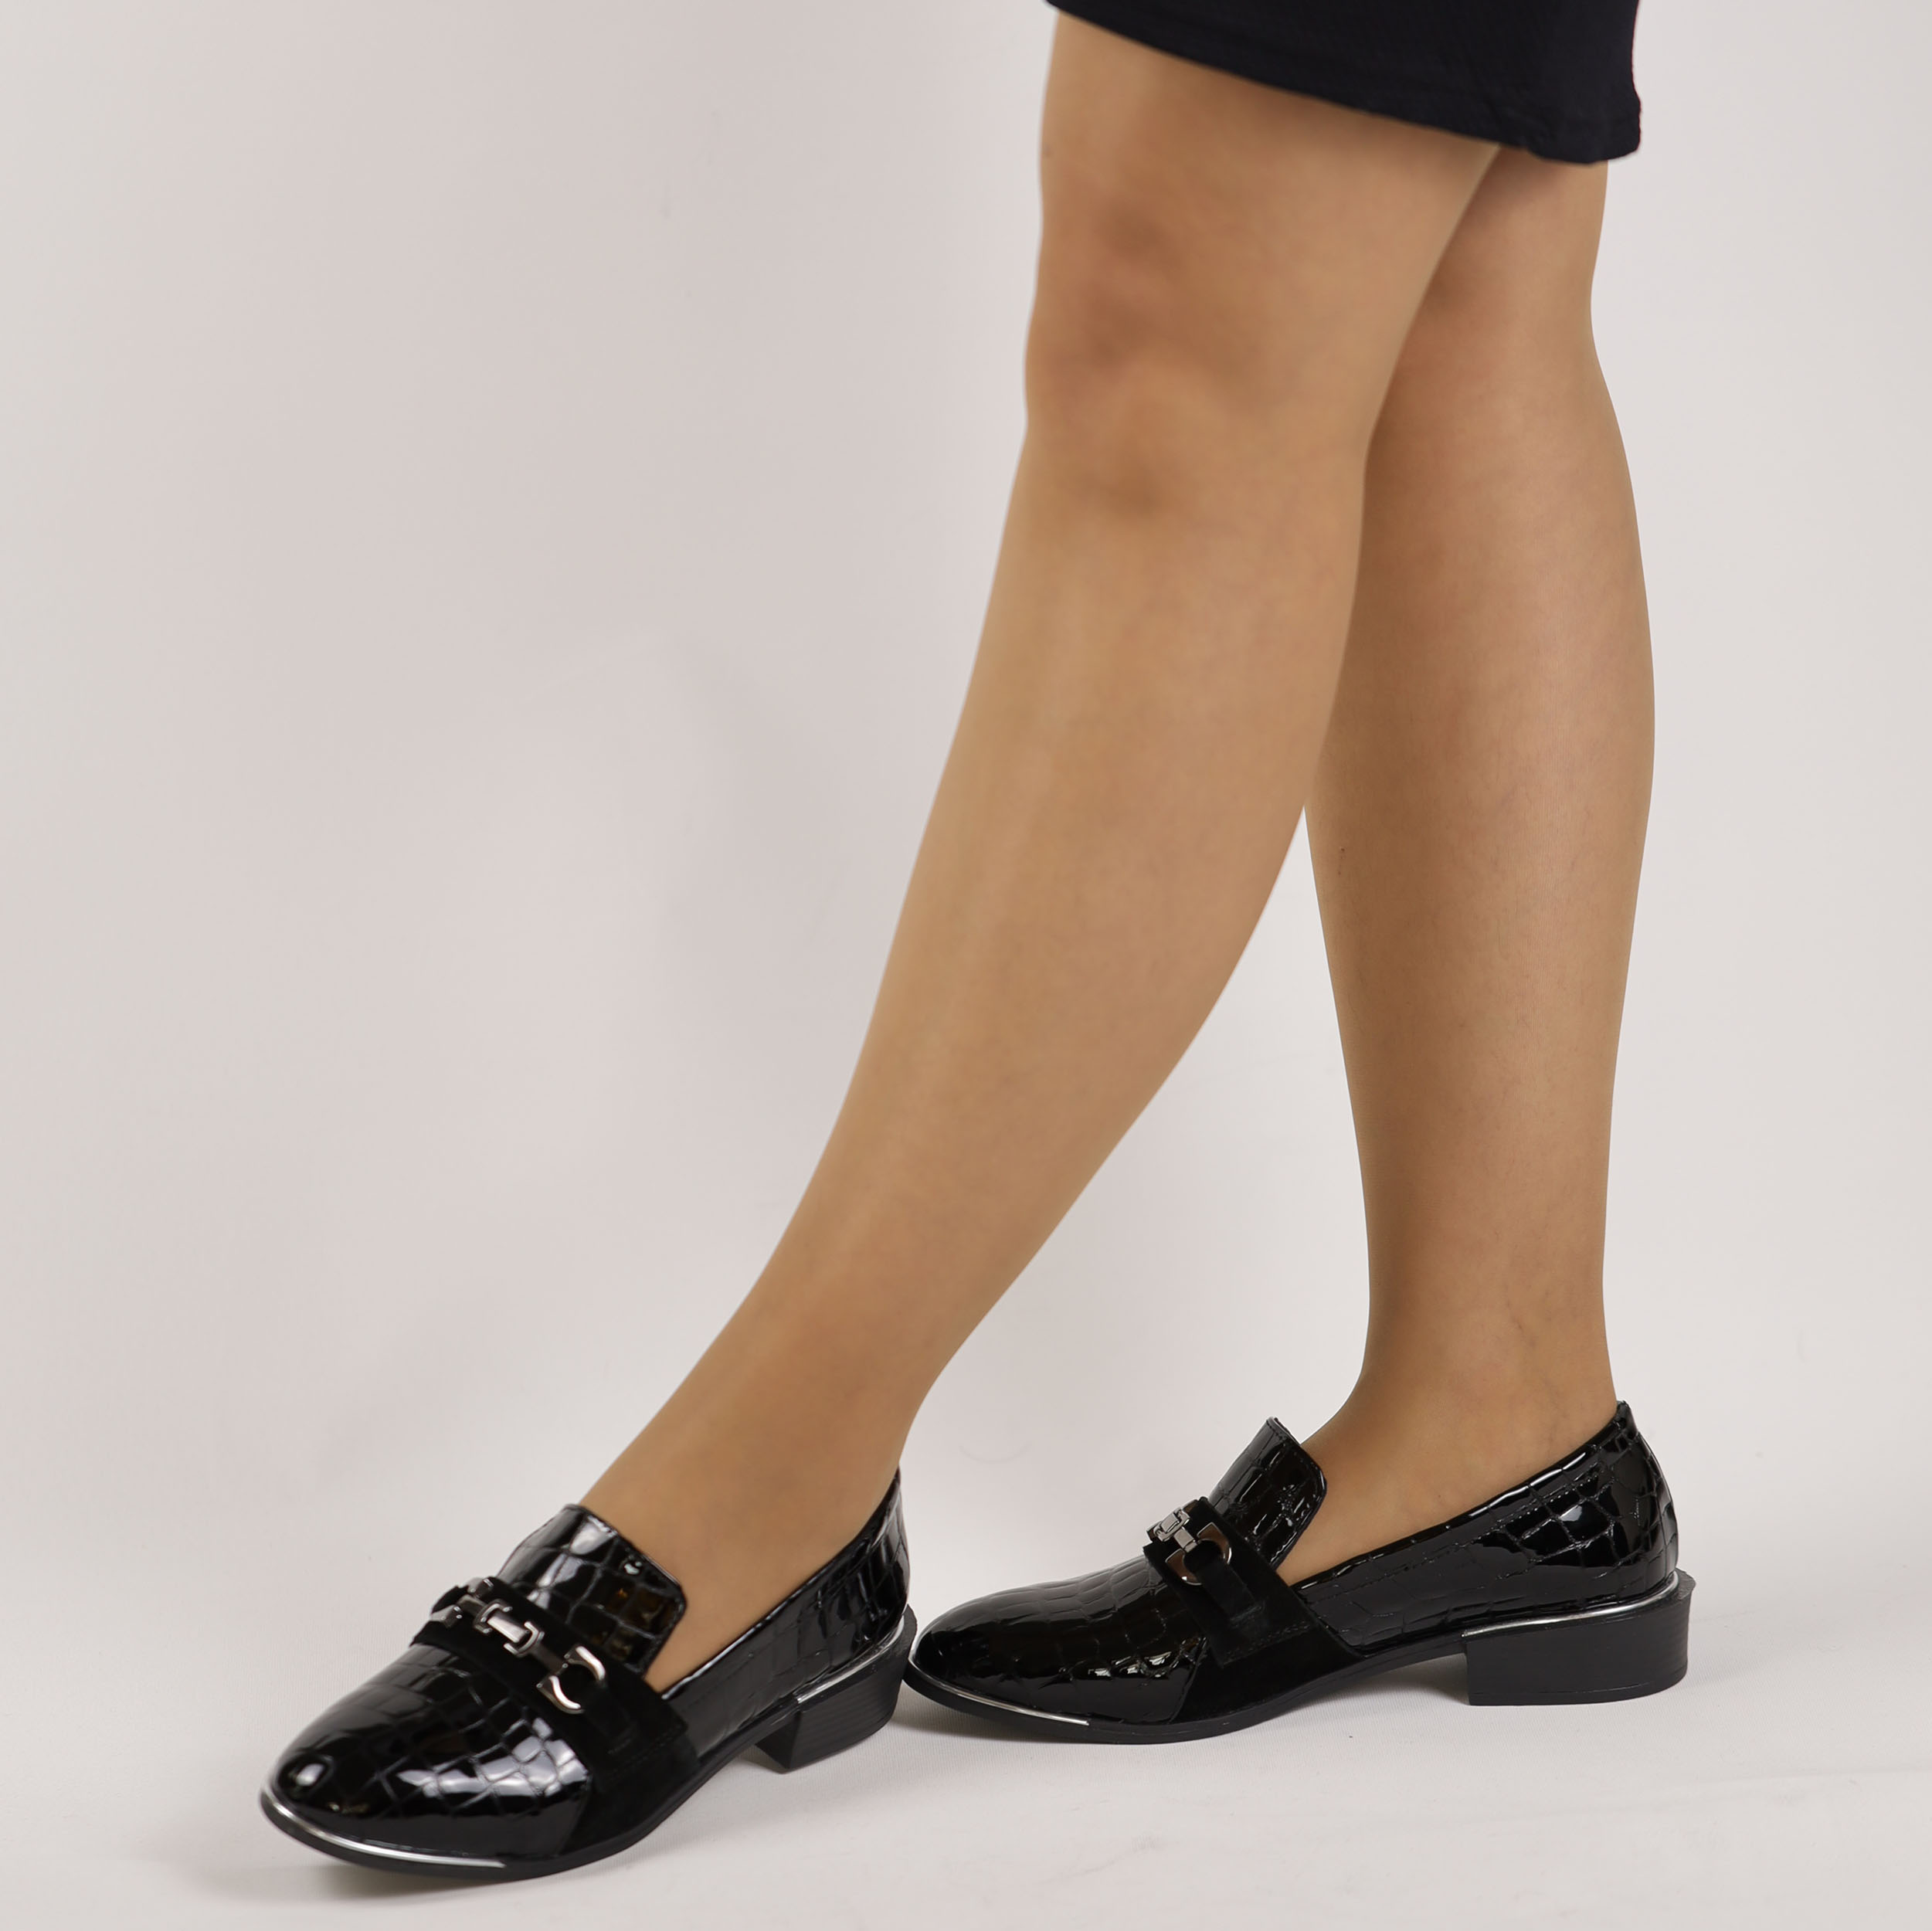 TwoEgoist Kadın Hakiki Deri Günlük Klasik Rahat Kalıp Topuksuz Düz Ayakkabı Babet, Renk: Siyah, Beden: 36